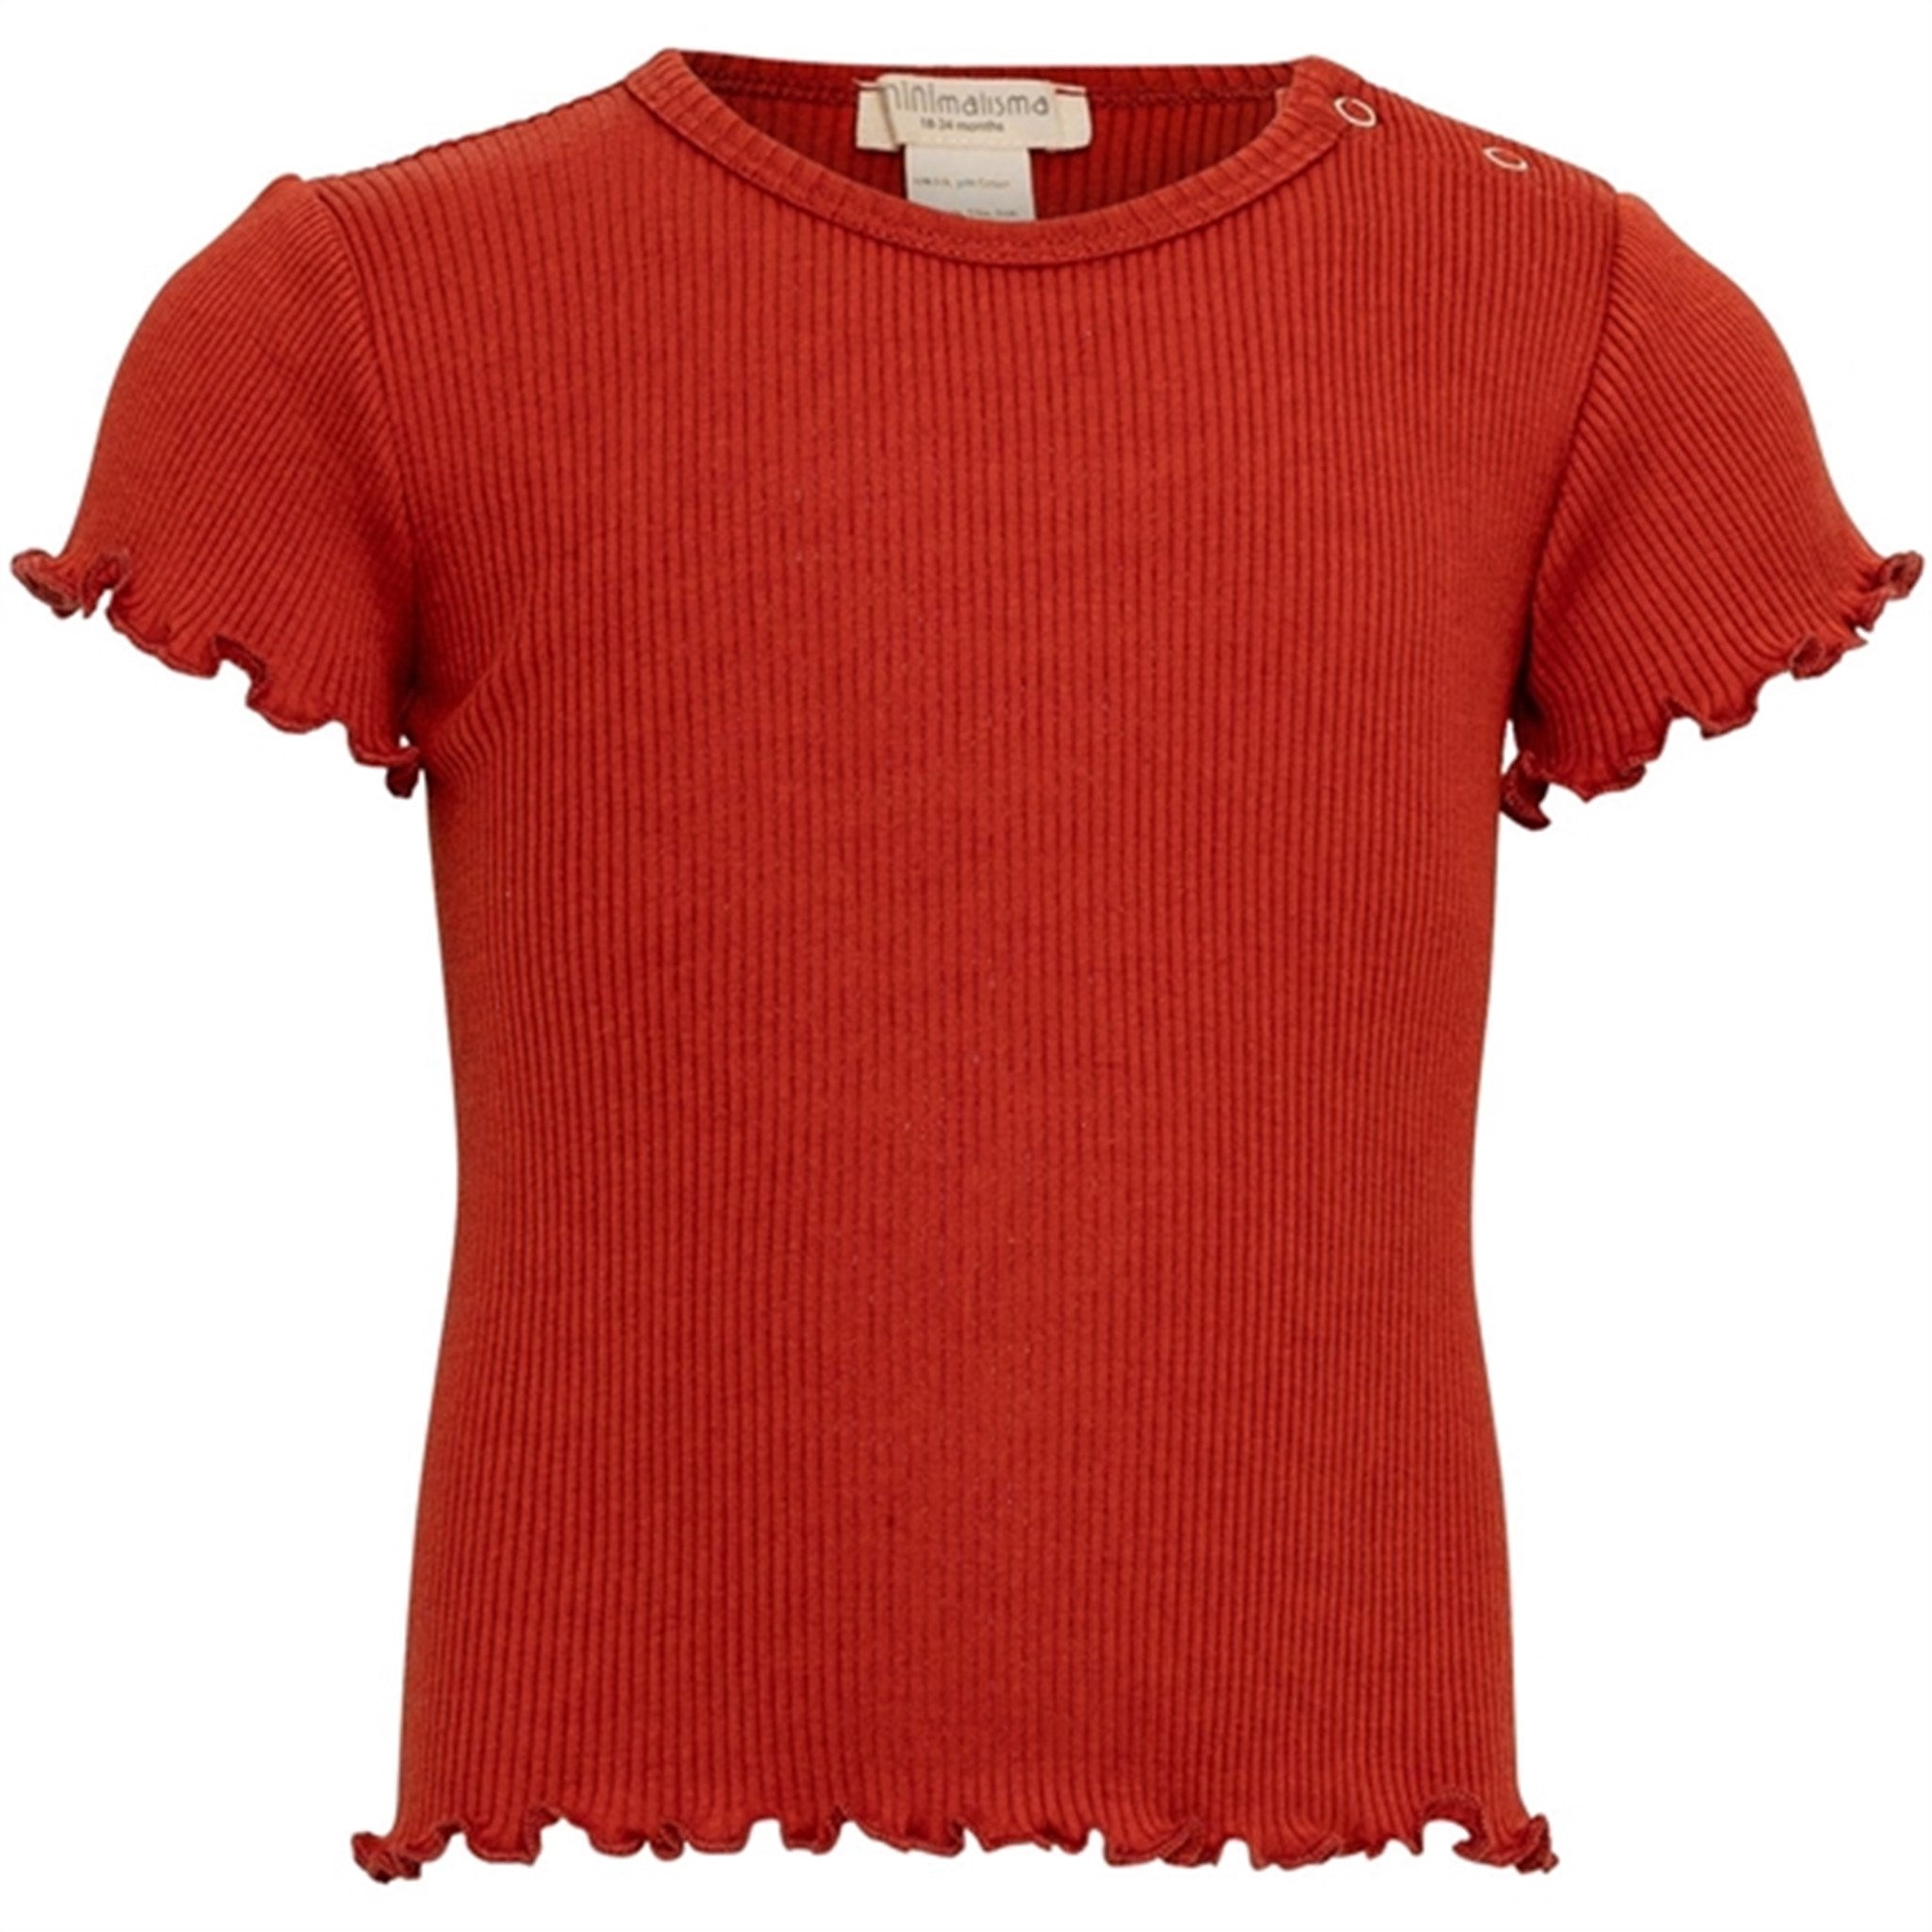 Minimalisma Bimse T-shirt Poppy Red